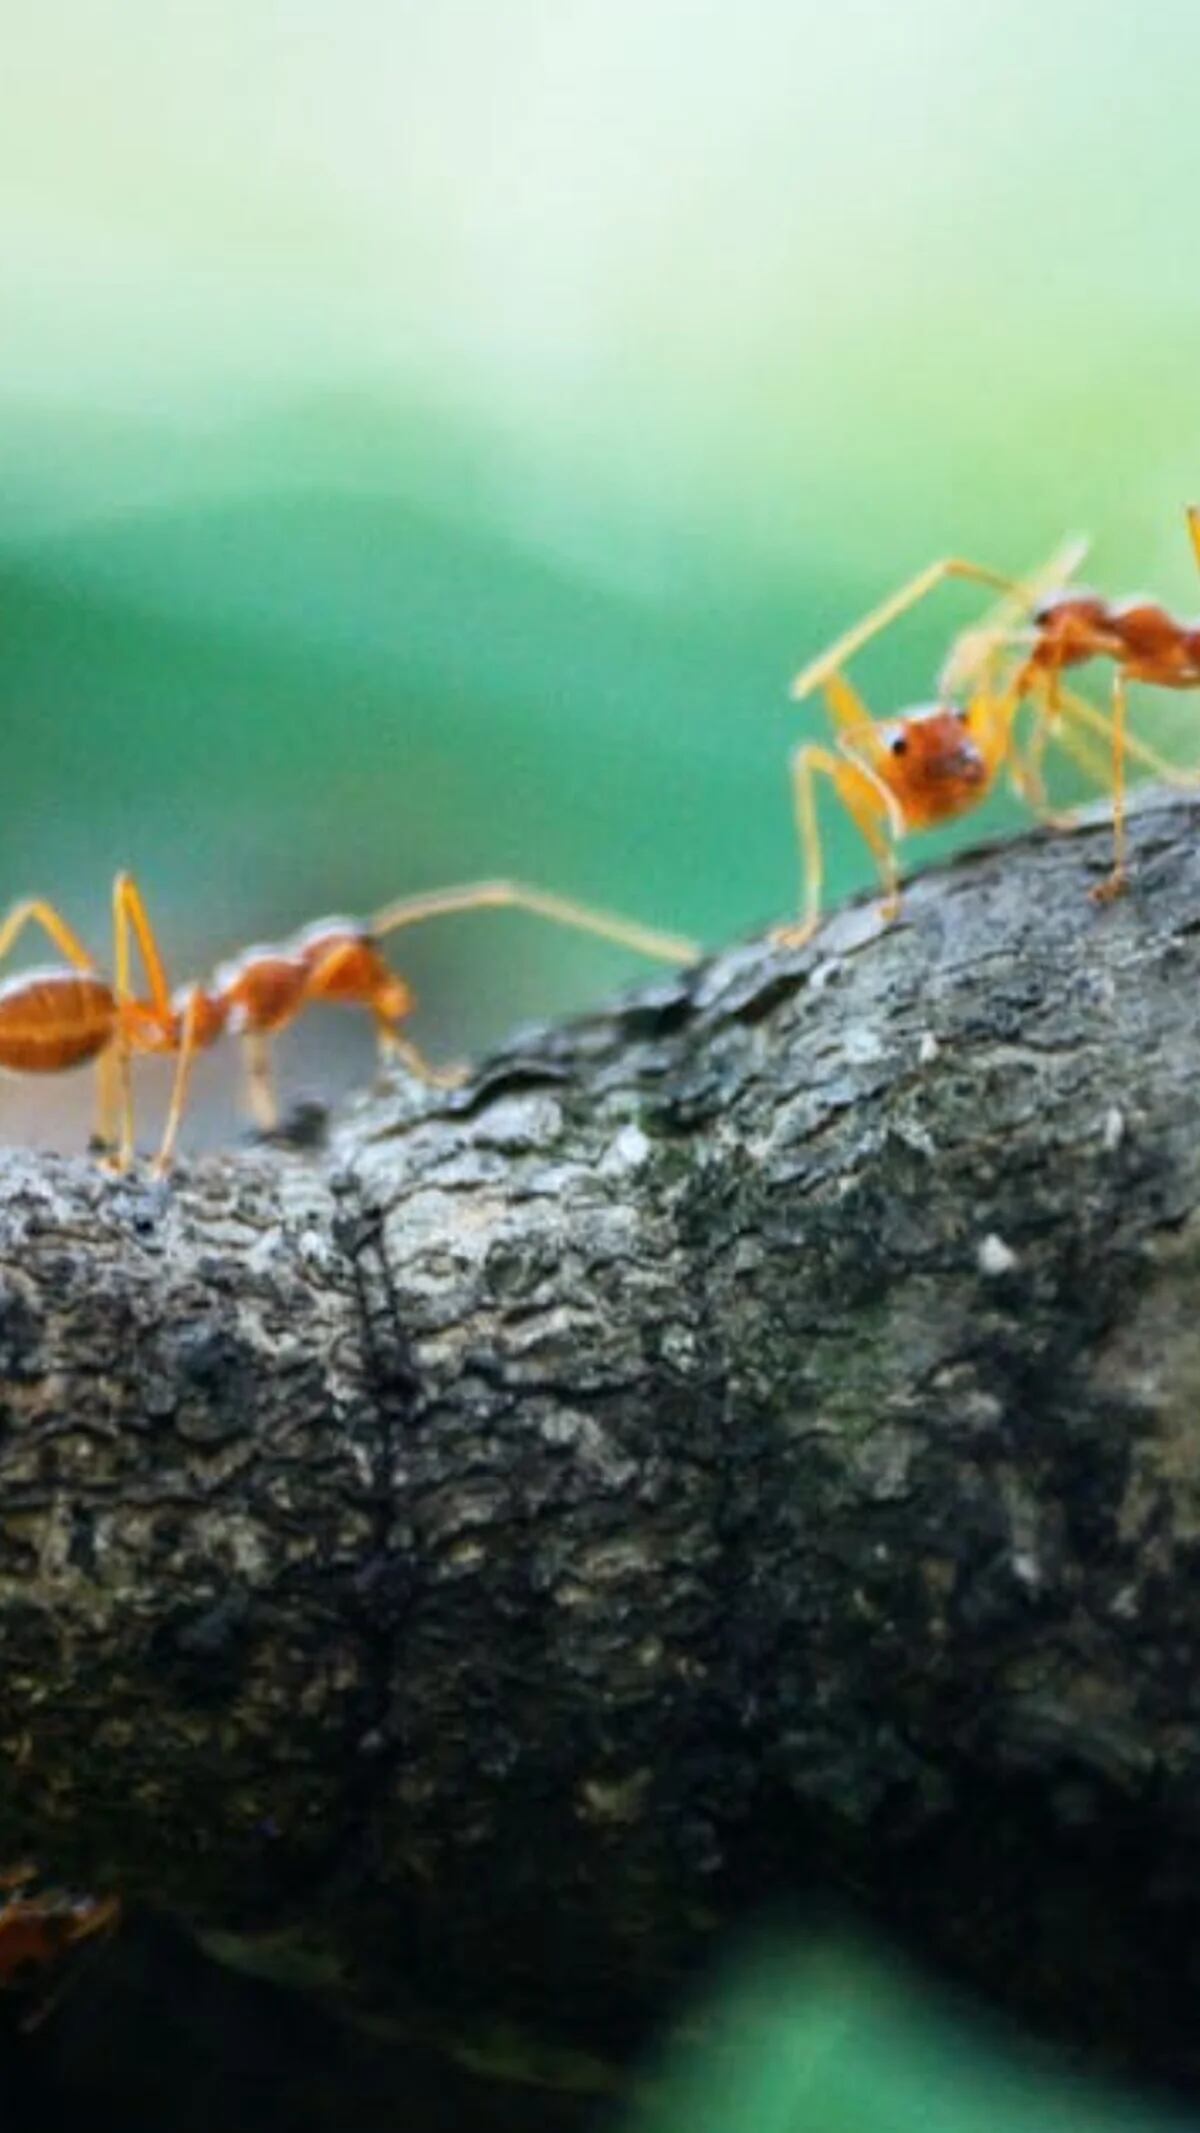 Cómo combatir las hormigas en casa